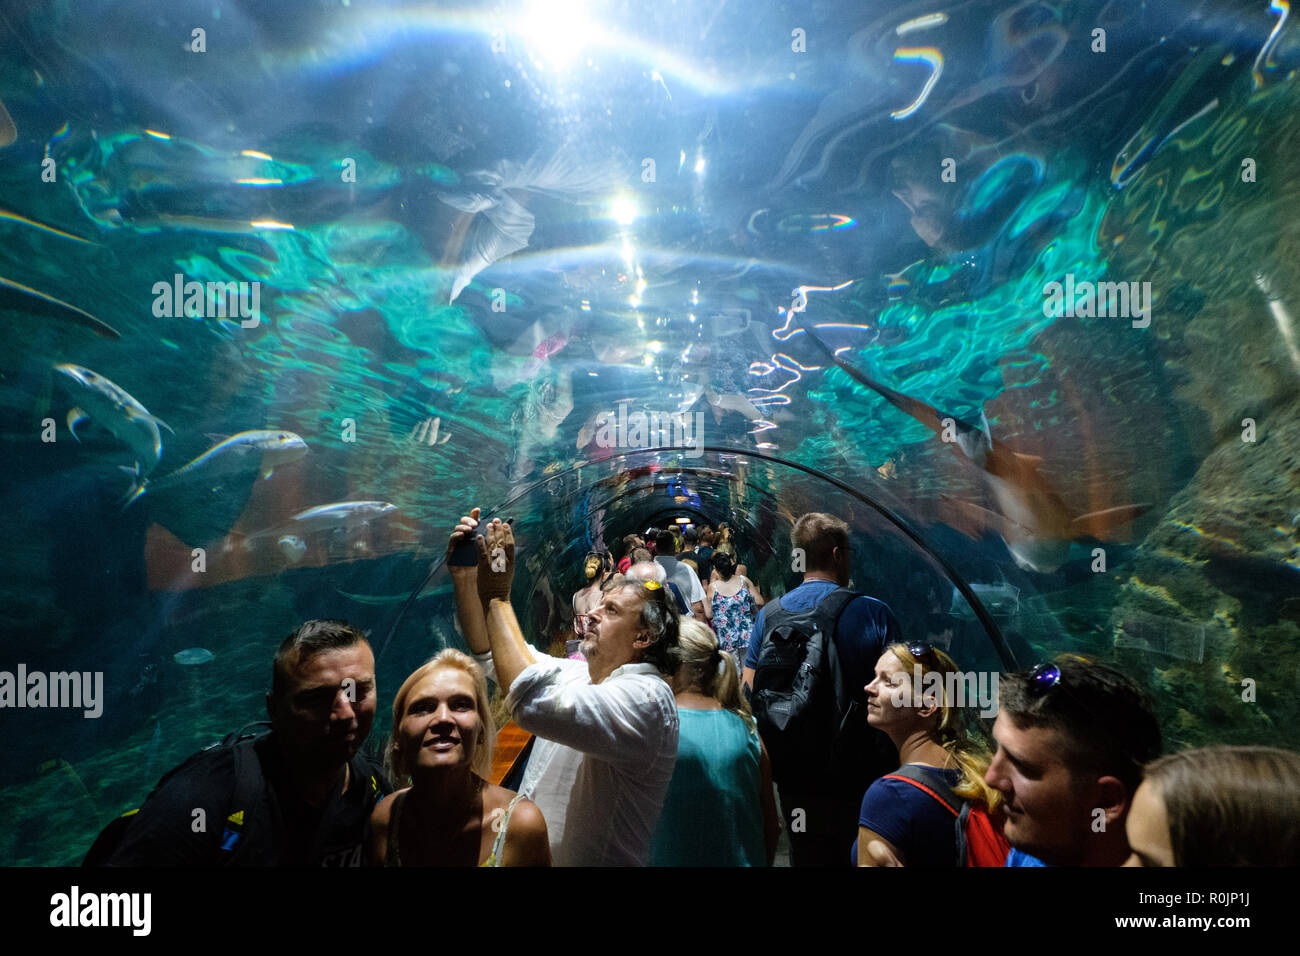 Teneriffa, Kanarische Inseln, Spanien - September 2018: Personen innerhalb des Shark tunnel Aquarium der Loro Park (Loro Parque) Zoo in Teneriffa. Stockfoto